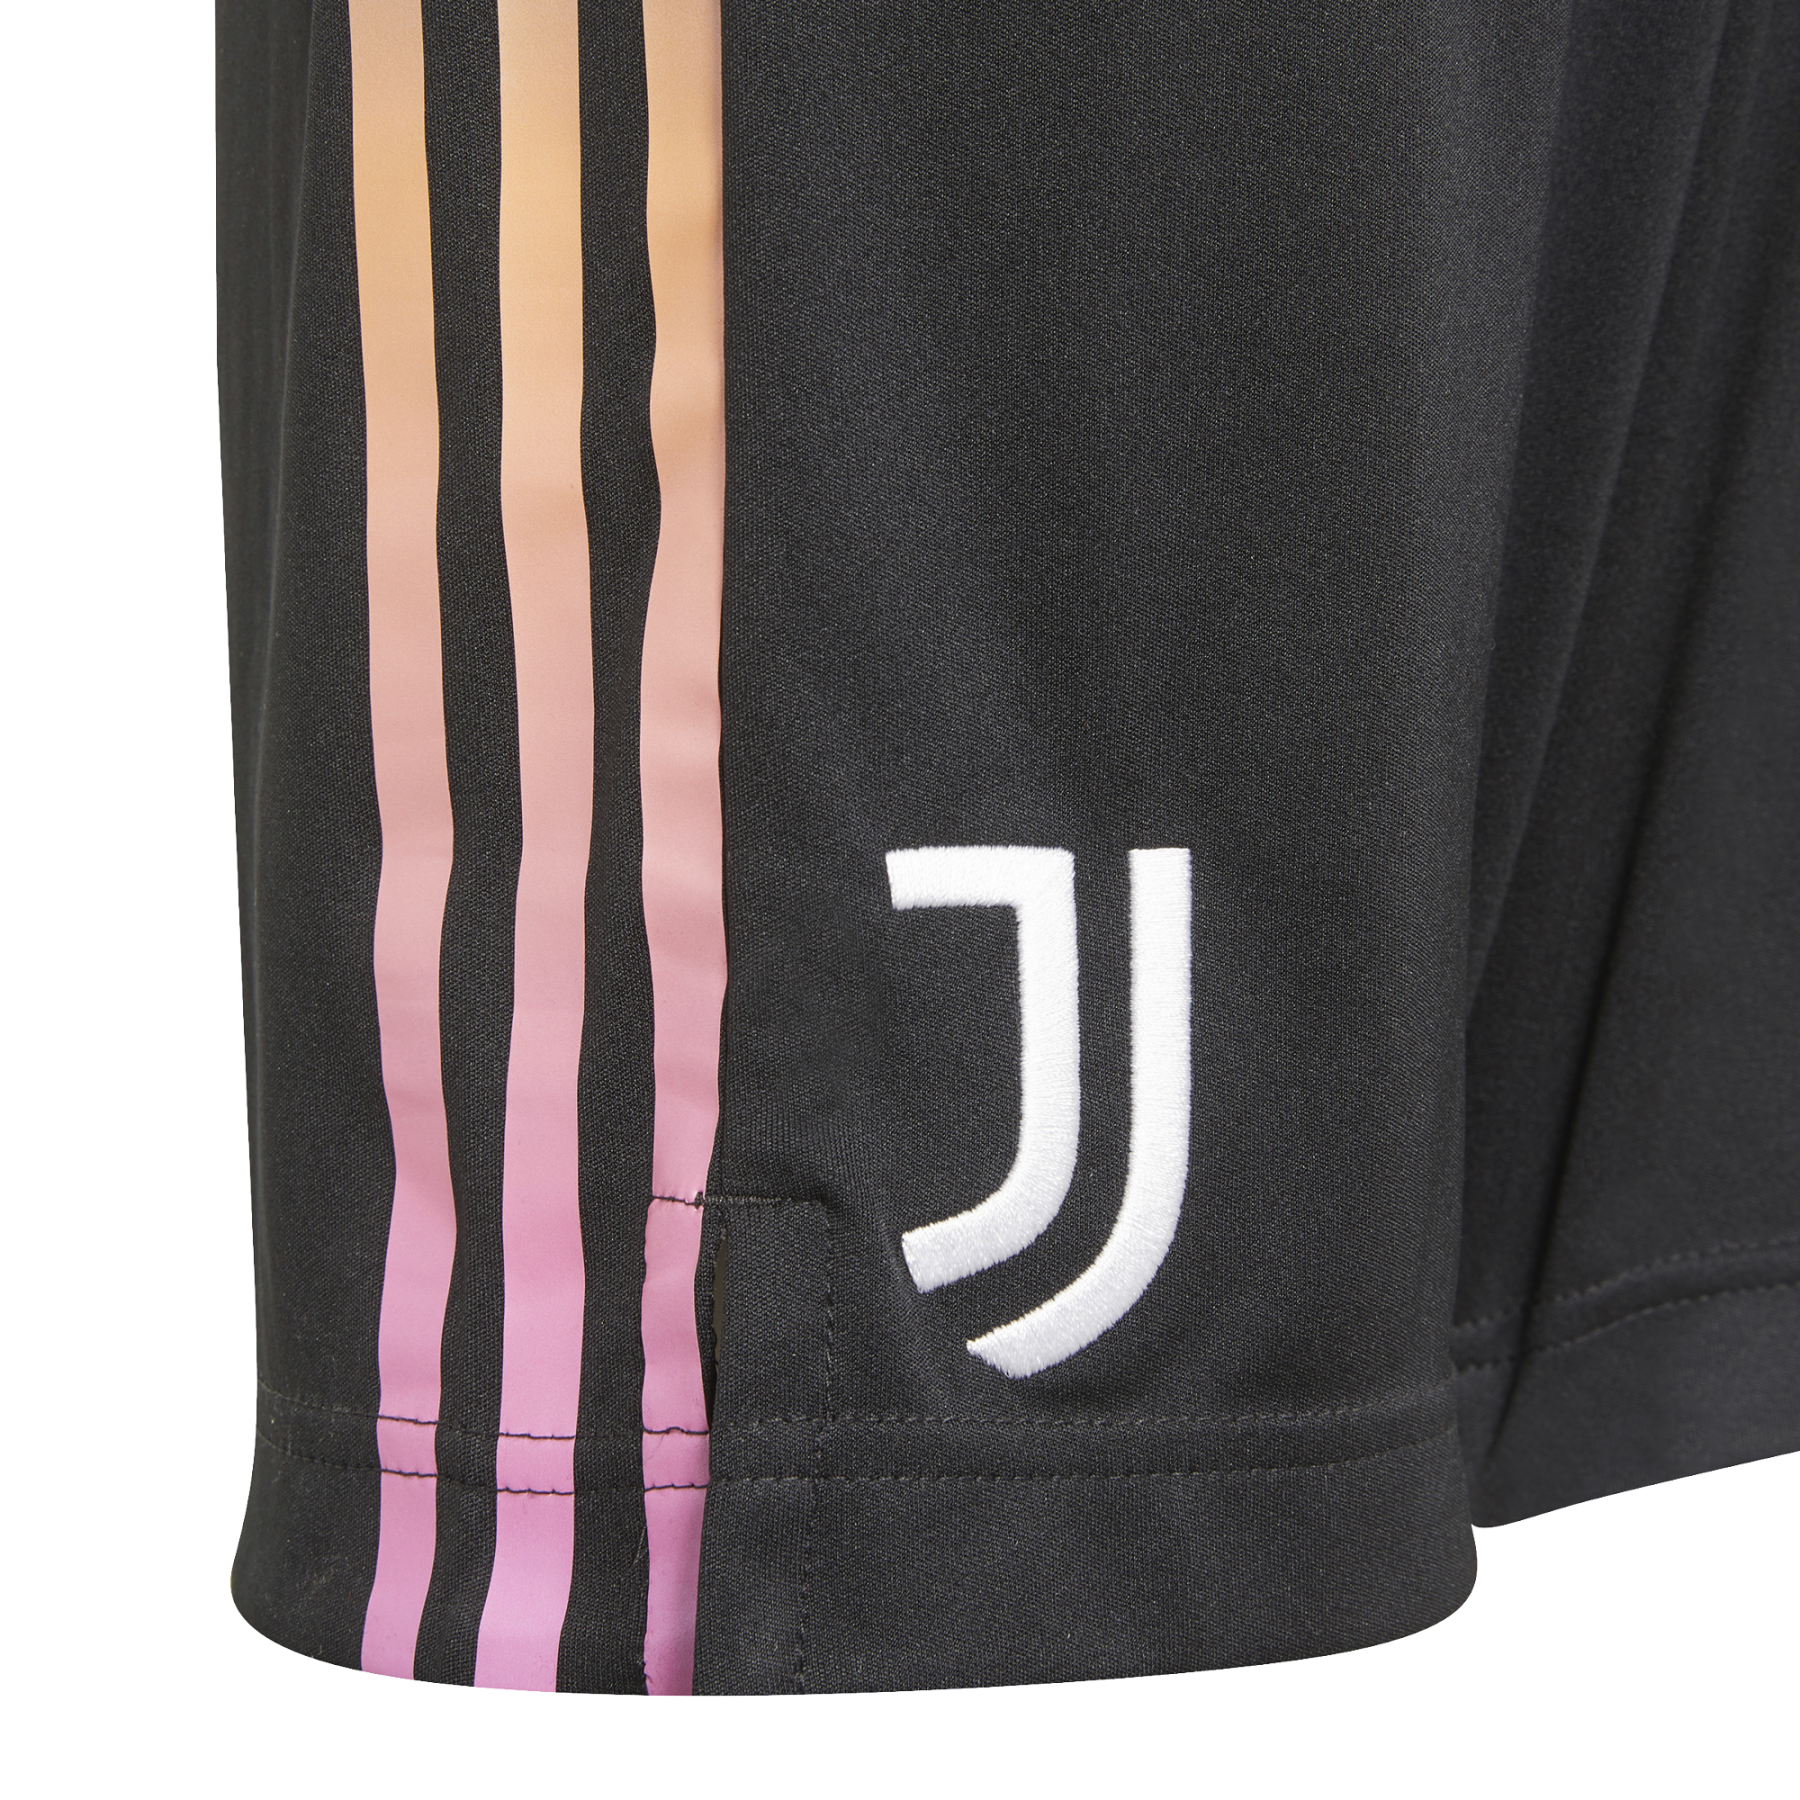 Pantaloncini per bambini all'aperto Juventus 2021/22